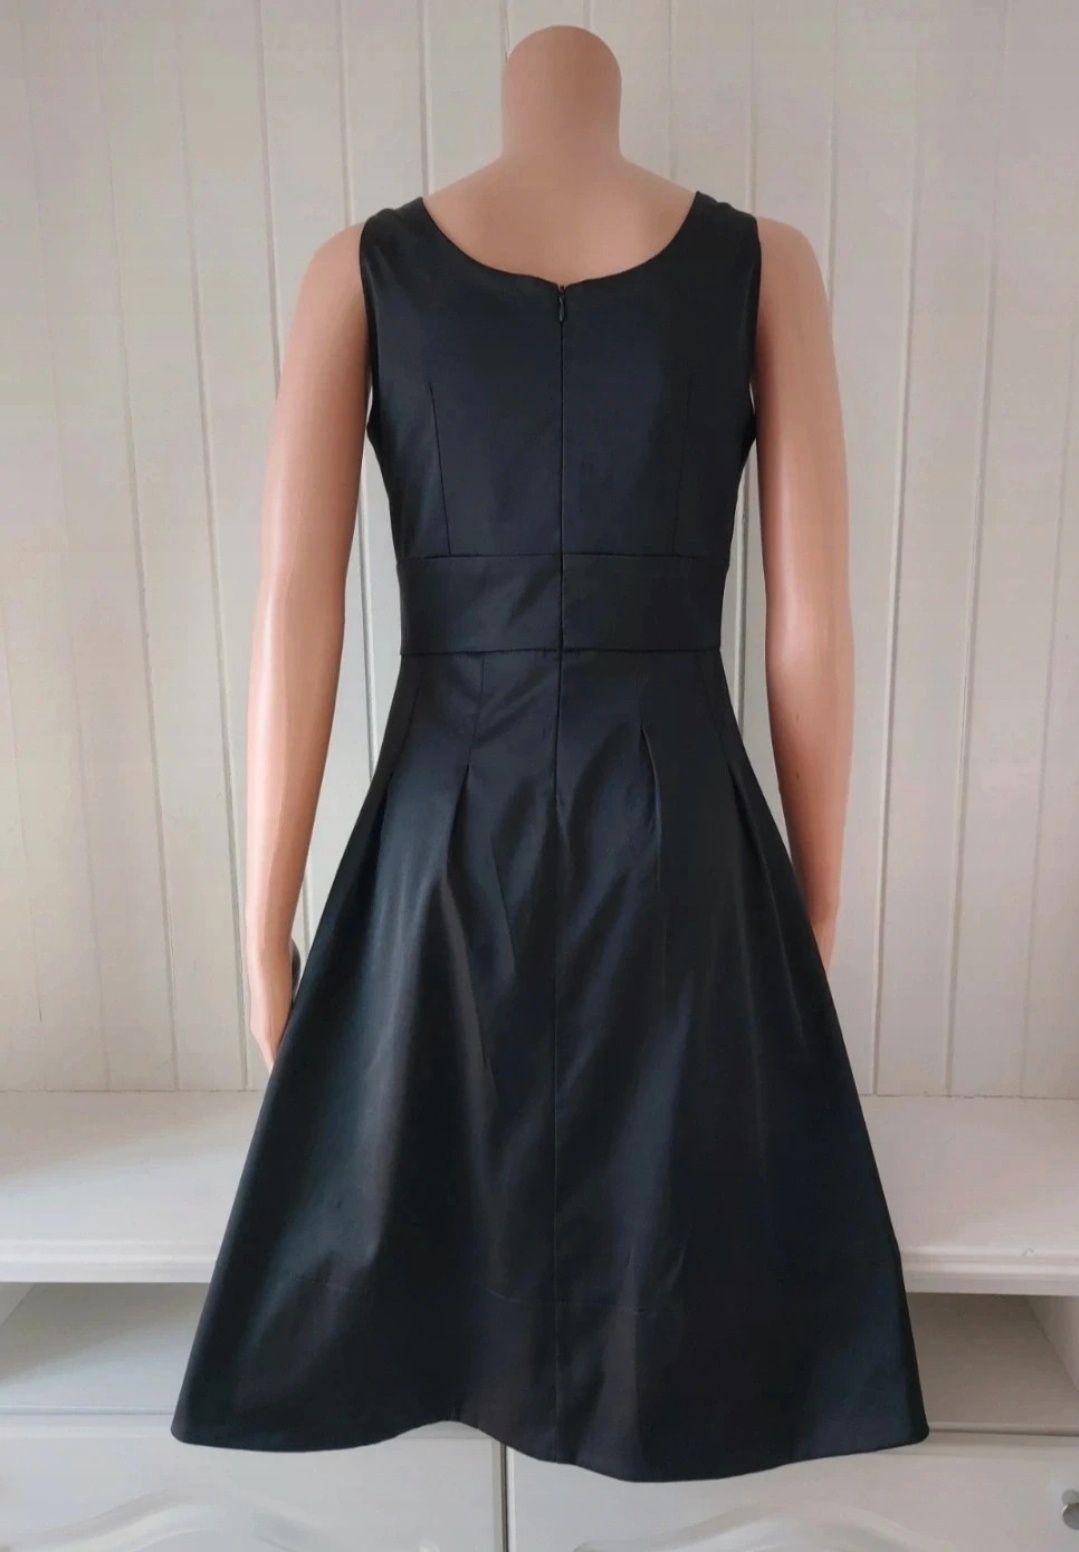 Czarna sukienka wieczorowa koktajlowa odcinana pod biustem Orsay S 36